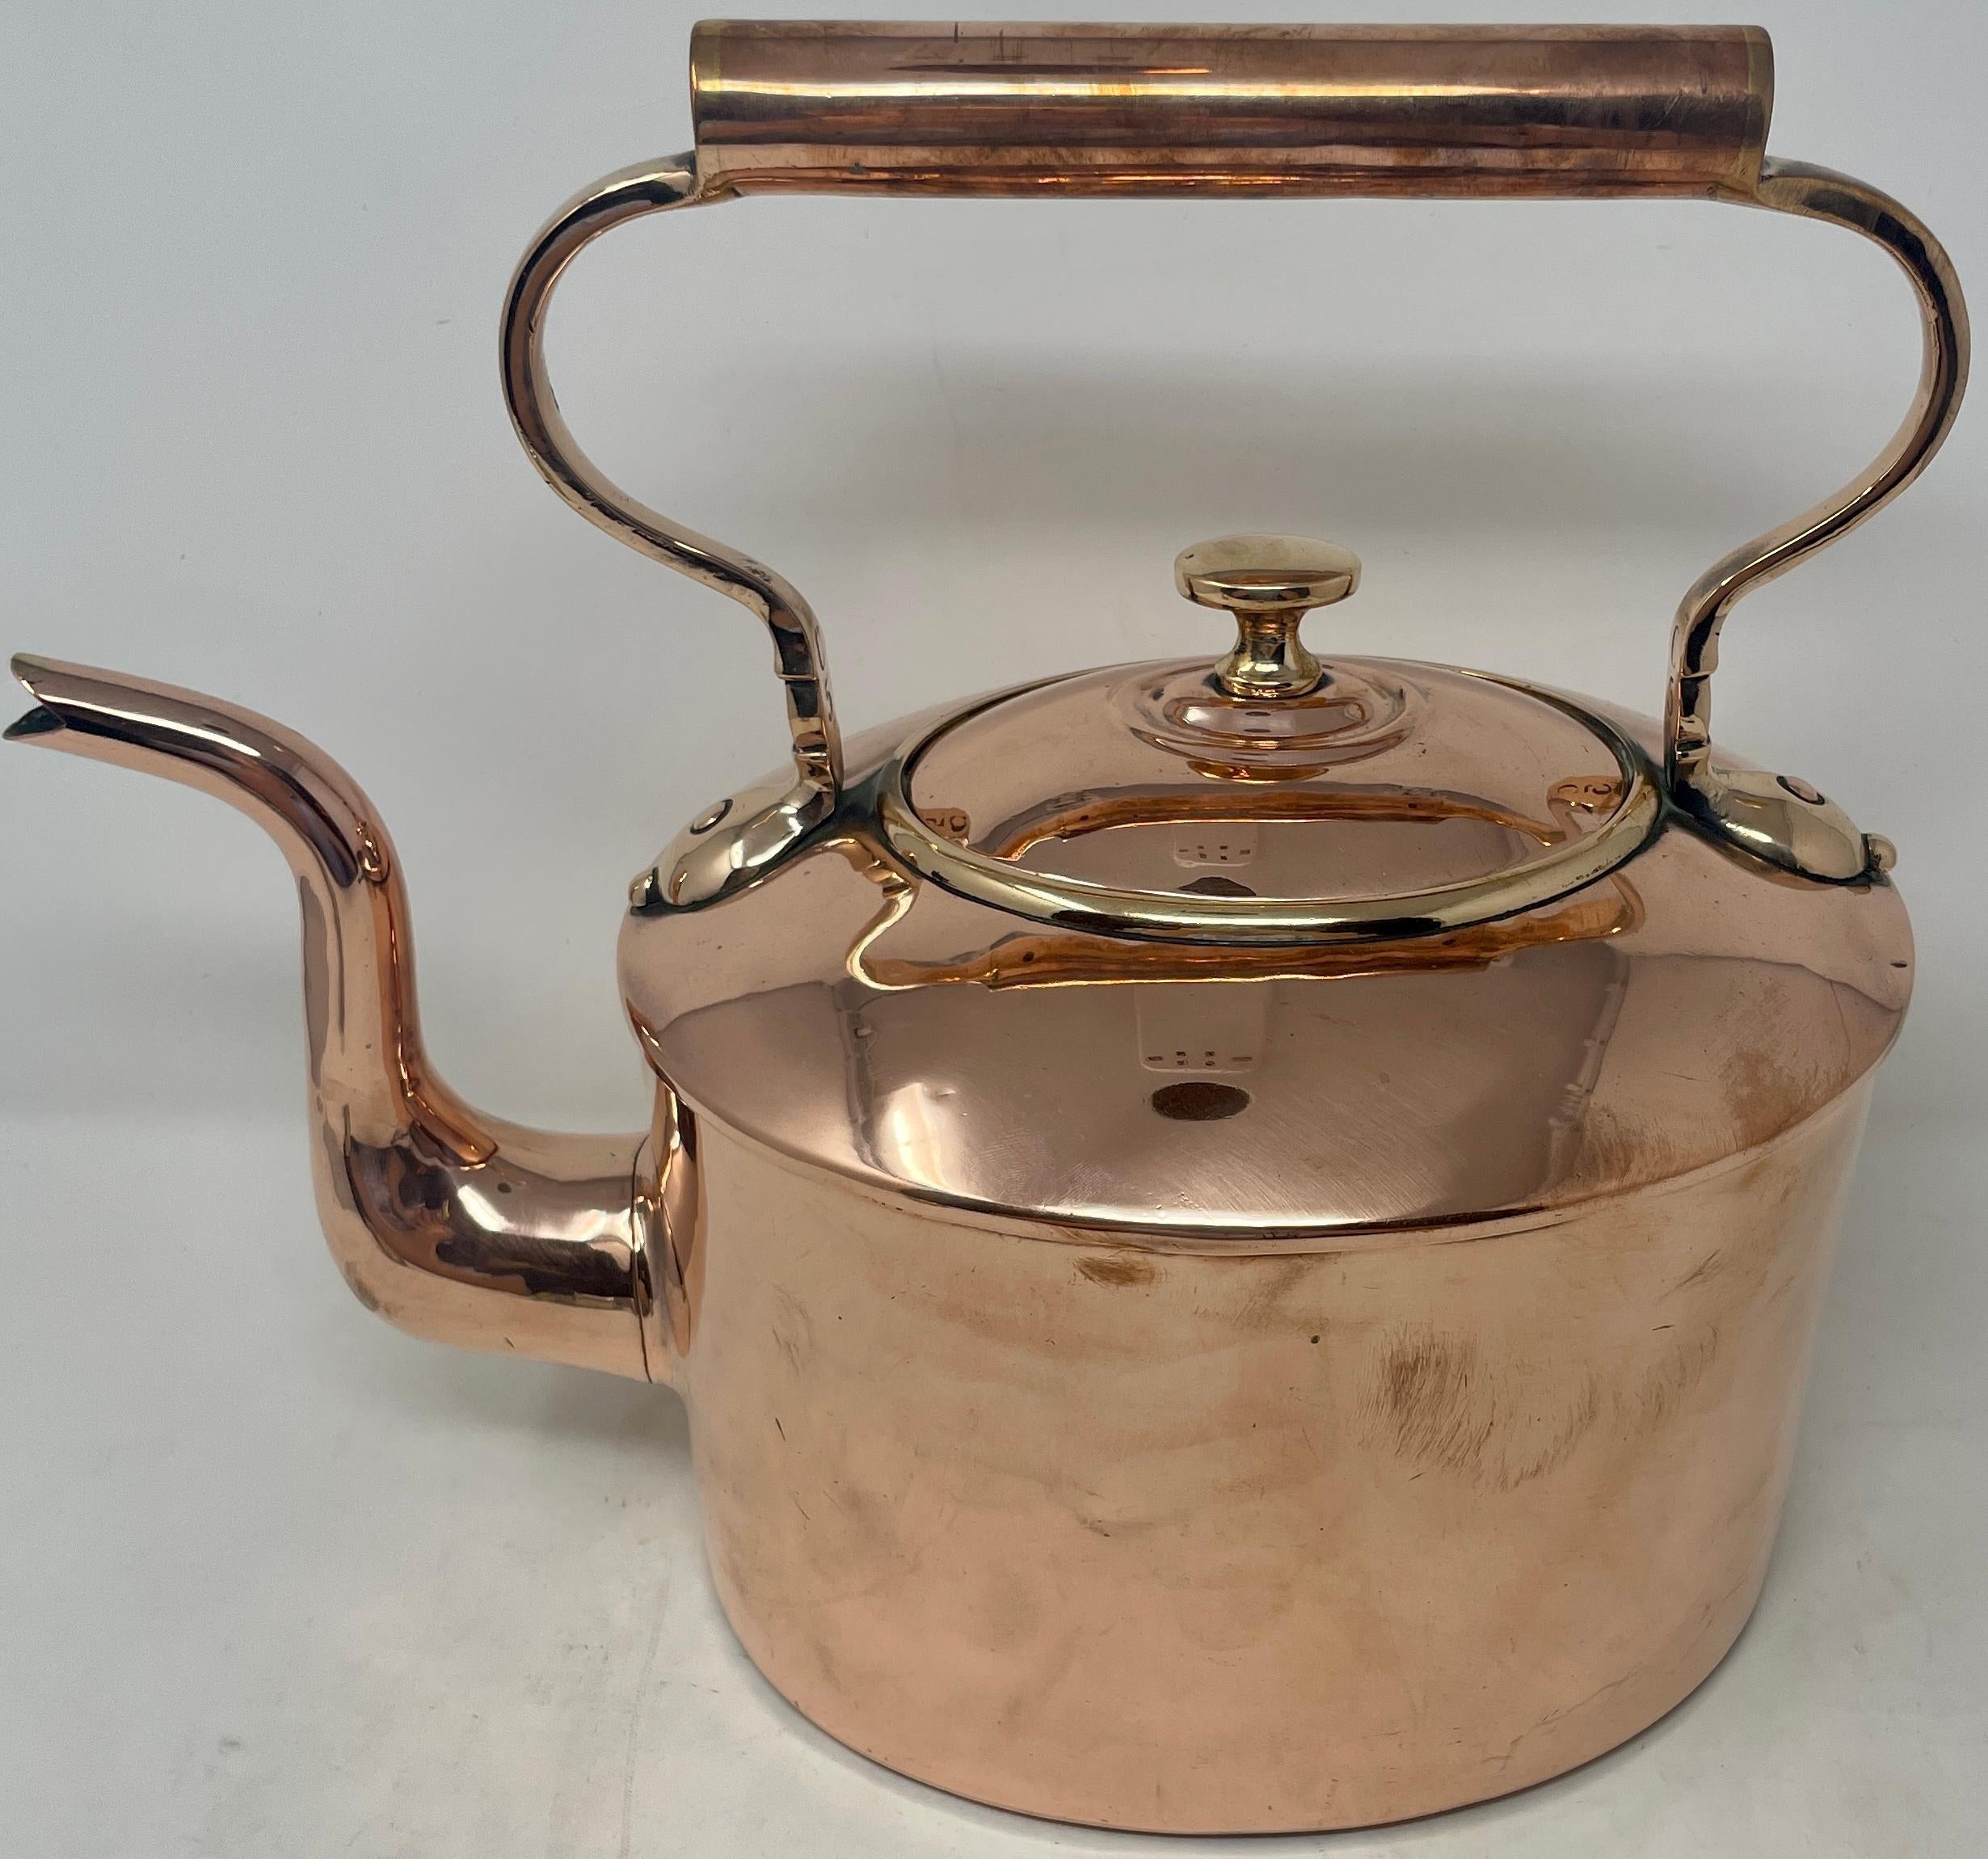 Antique English copper tea kettle, Circa 1860.